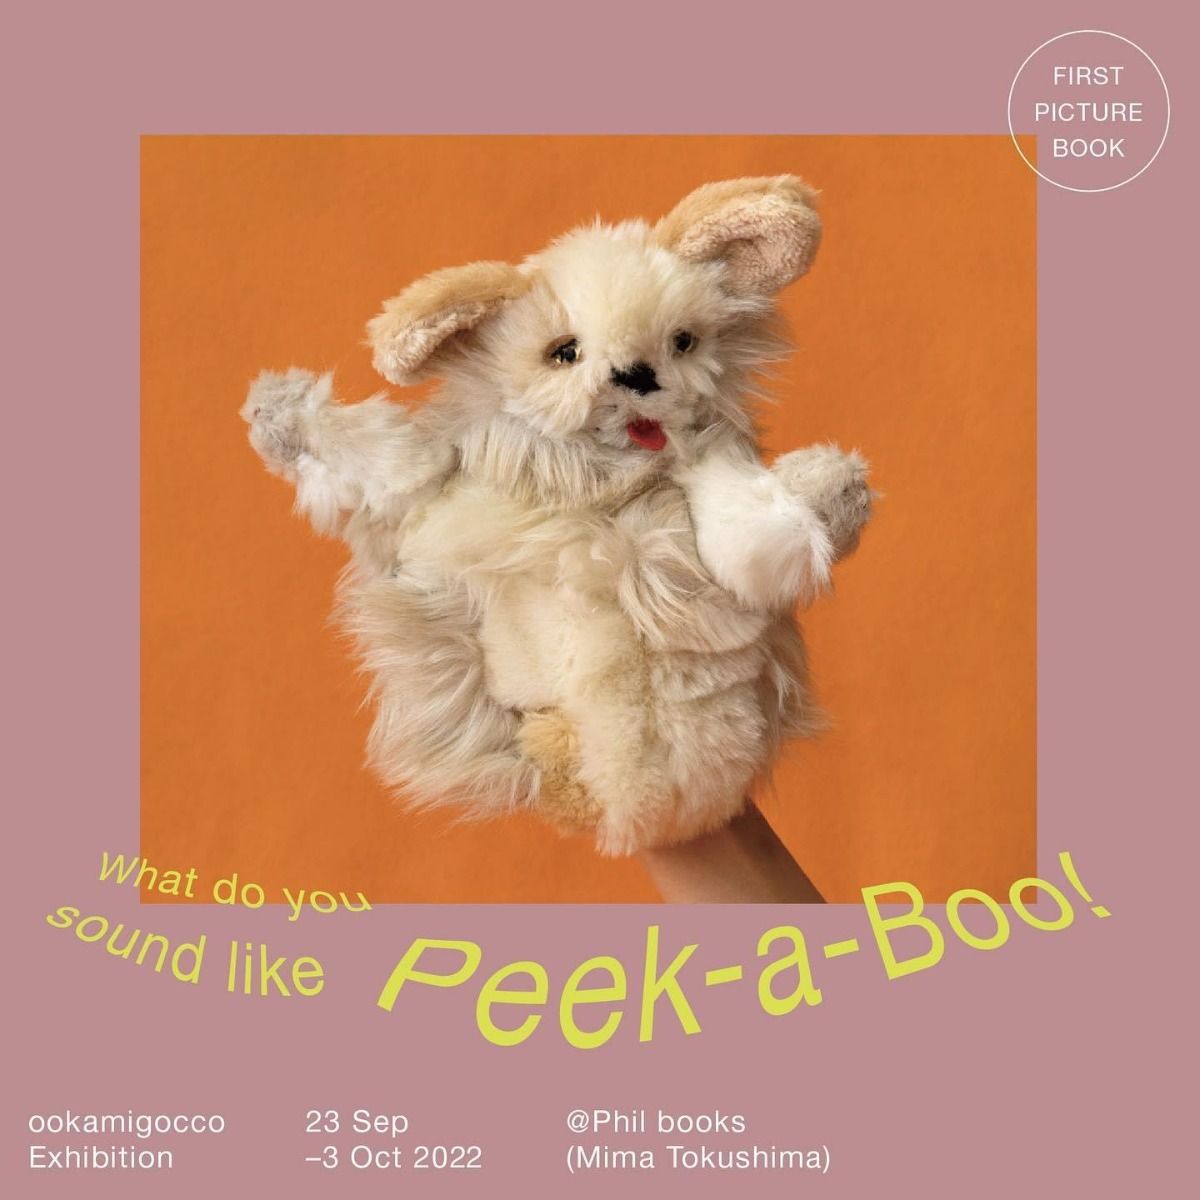 【徳島イベント情報】ookamigocco Exhibition『Peek-a-Boo!』at Phil Books